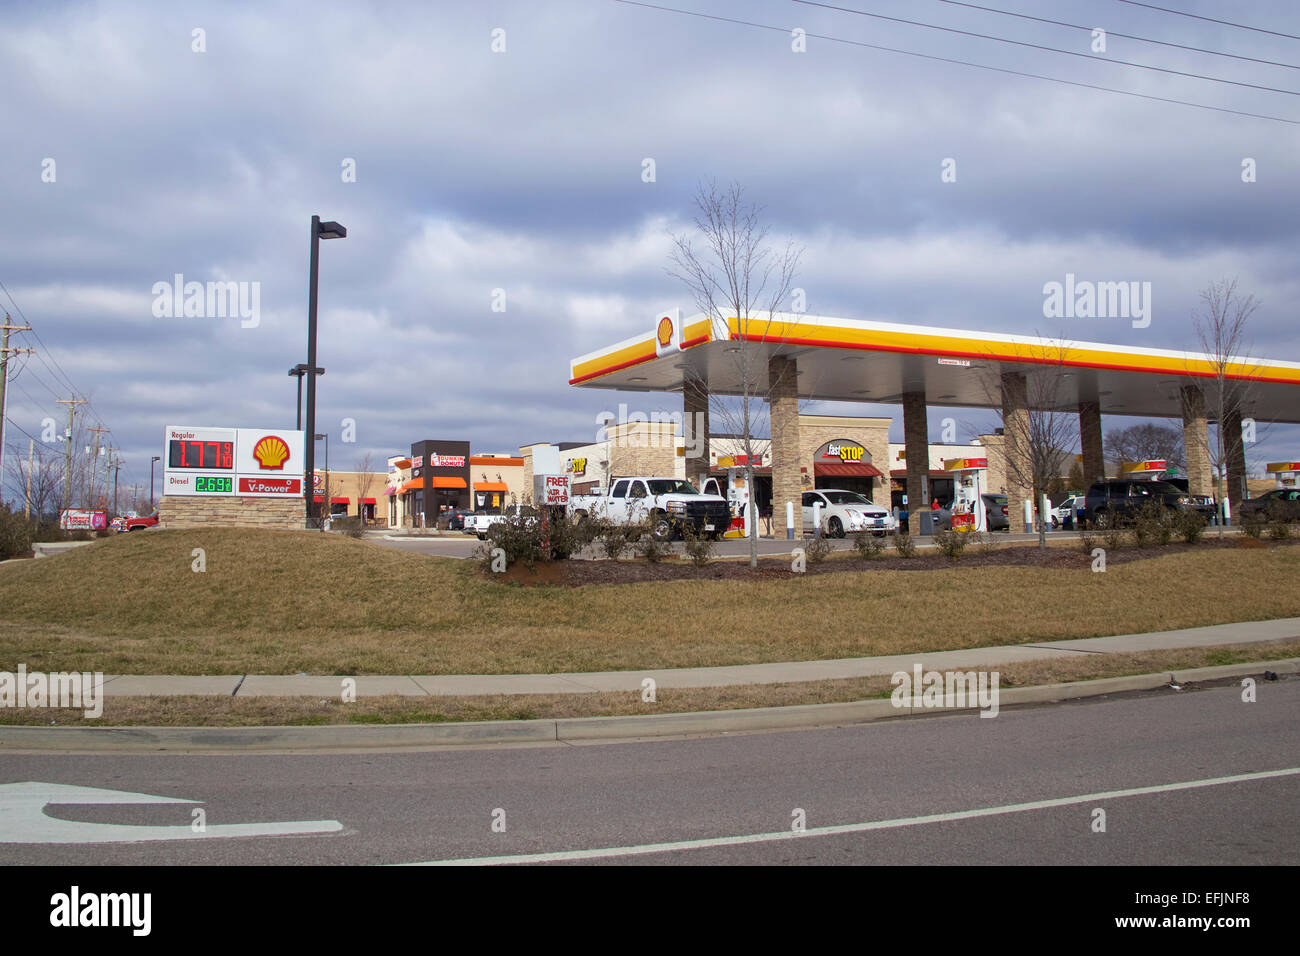 La gasolinera de Shell en los EE.UU. con los clientes el bombeo de gas. Foto de stock